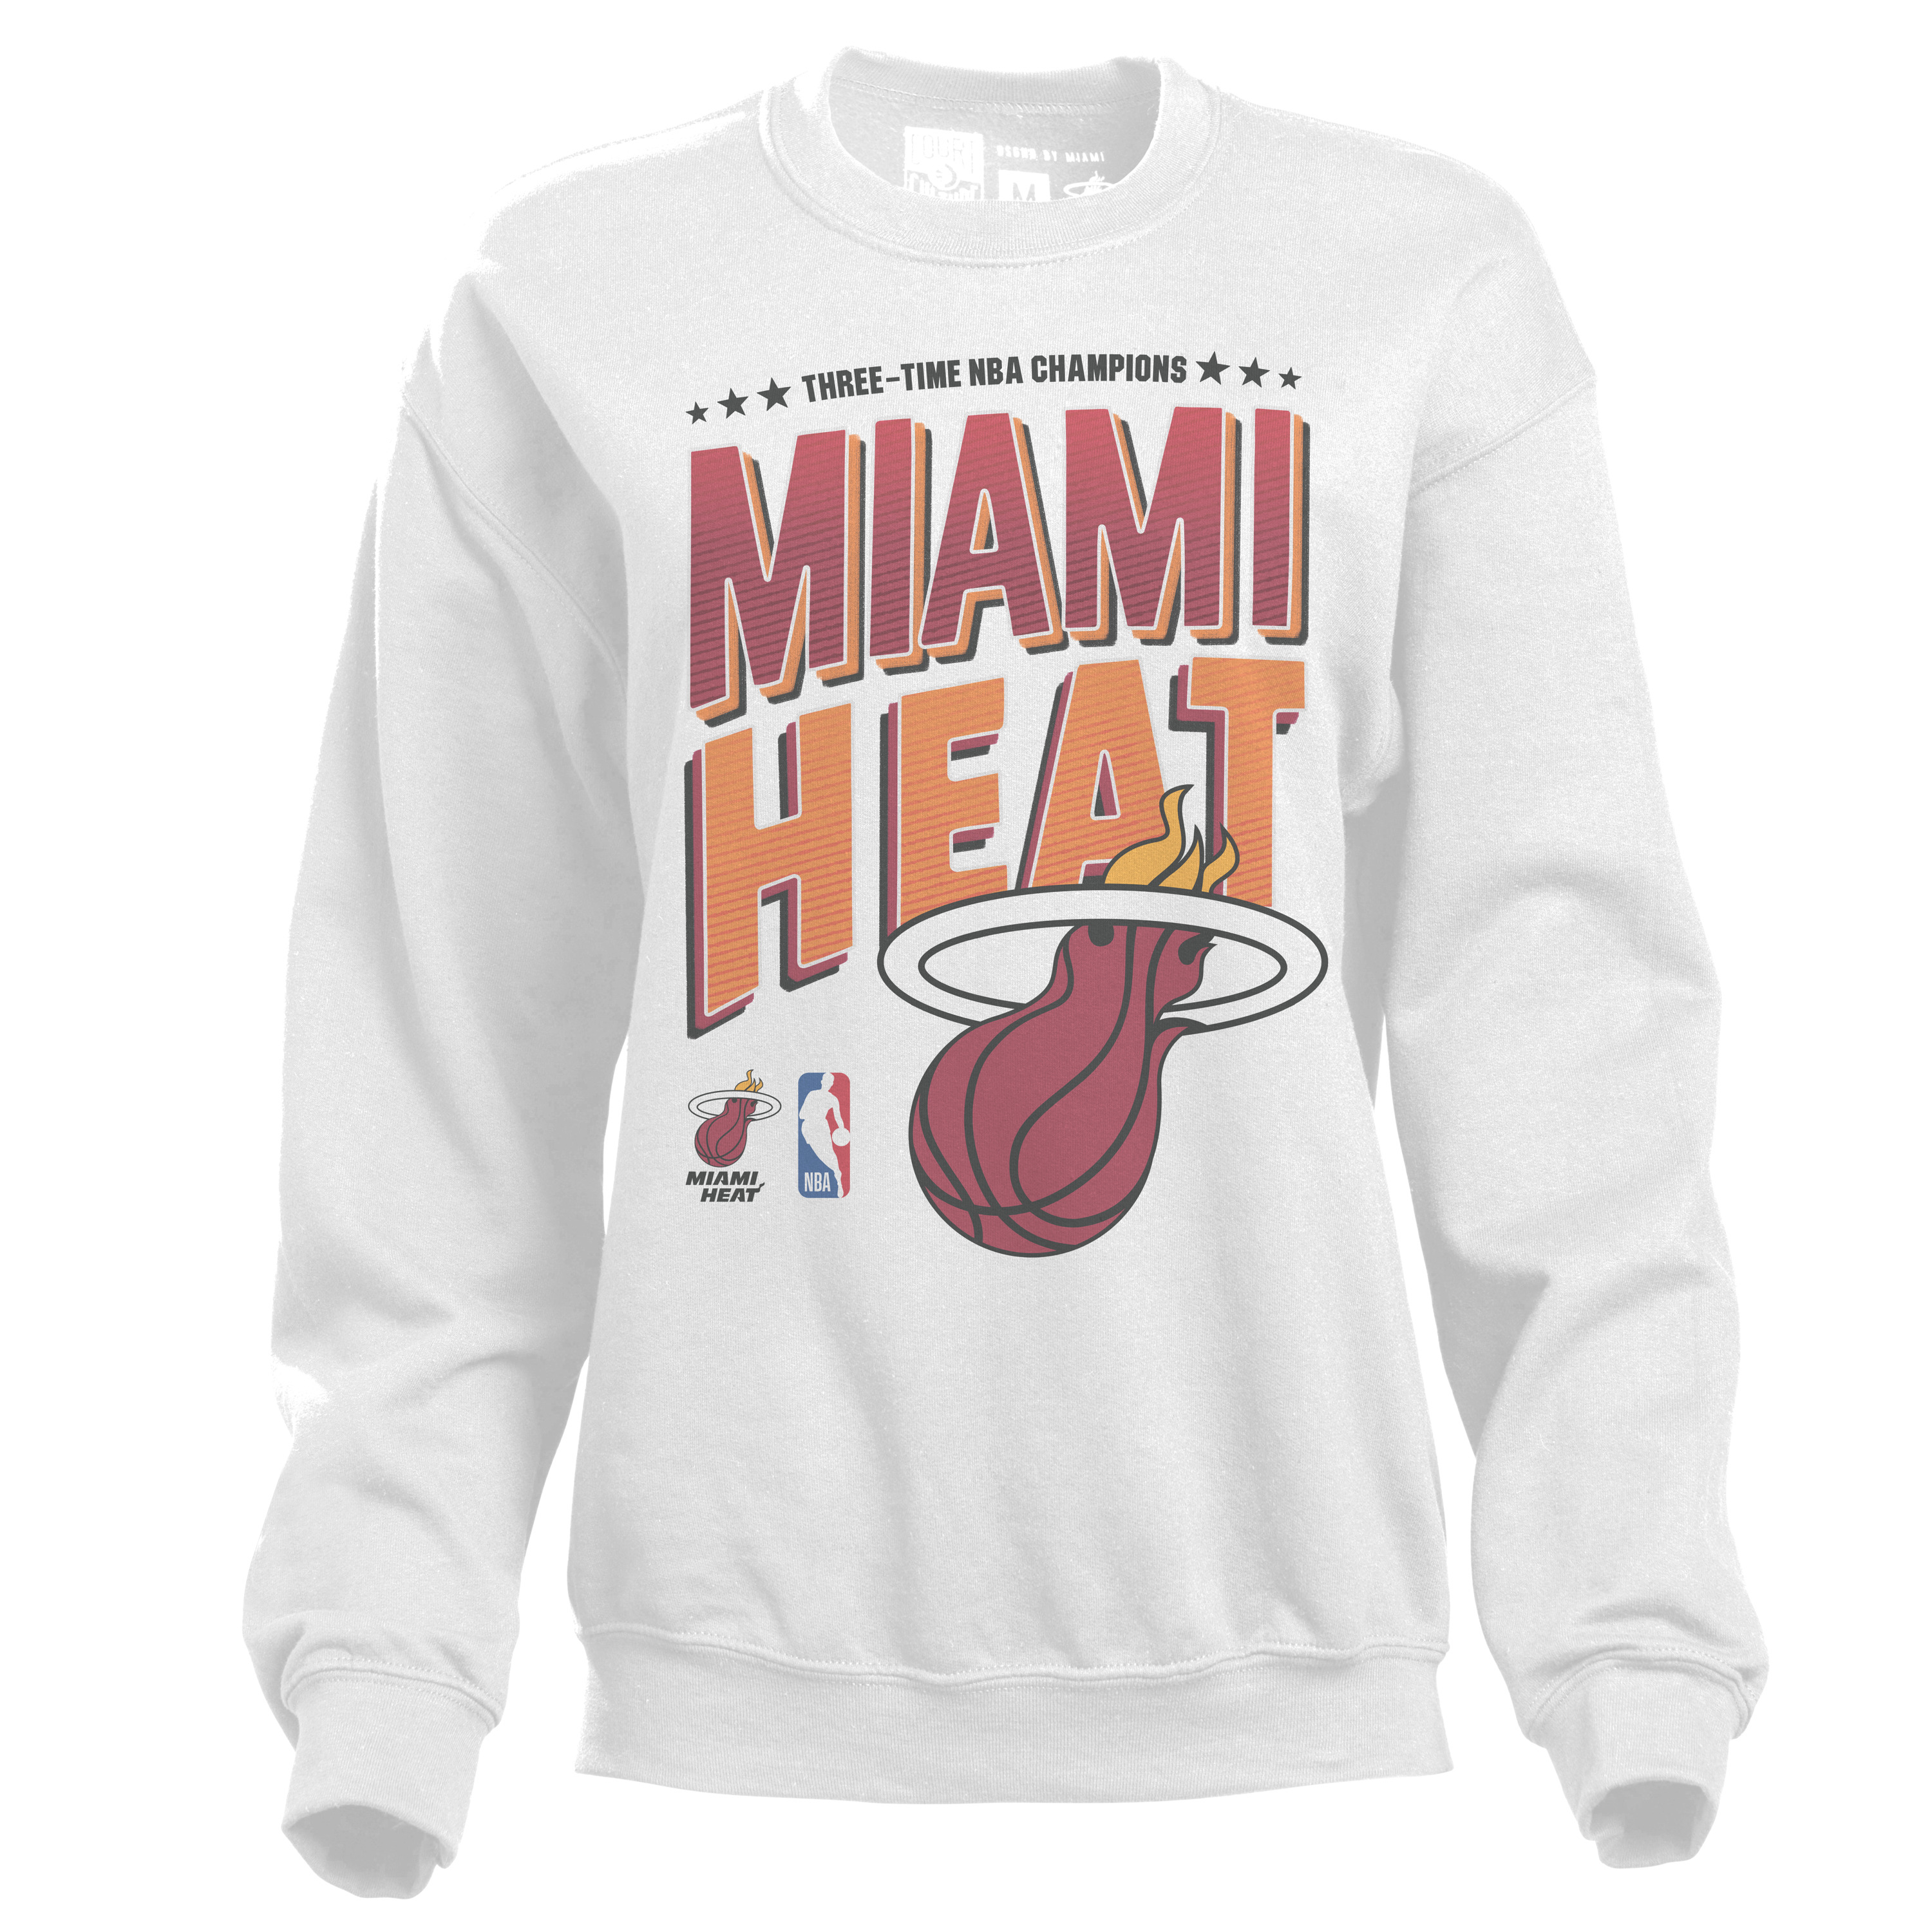 Miami Heat Tyler Herro court culture shirt, hoodie, sweater, long